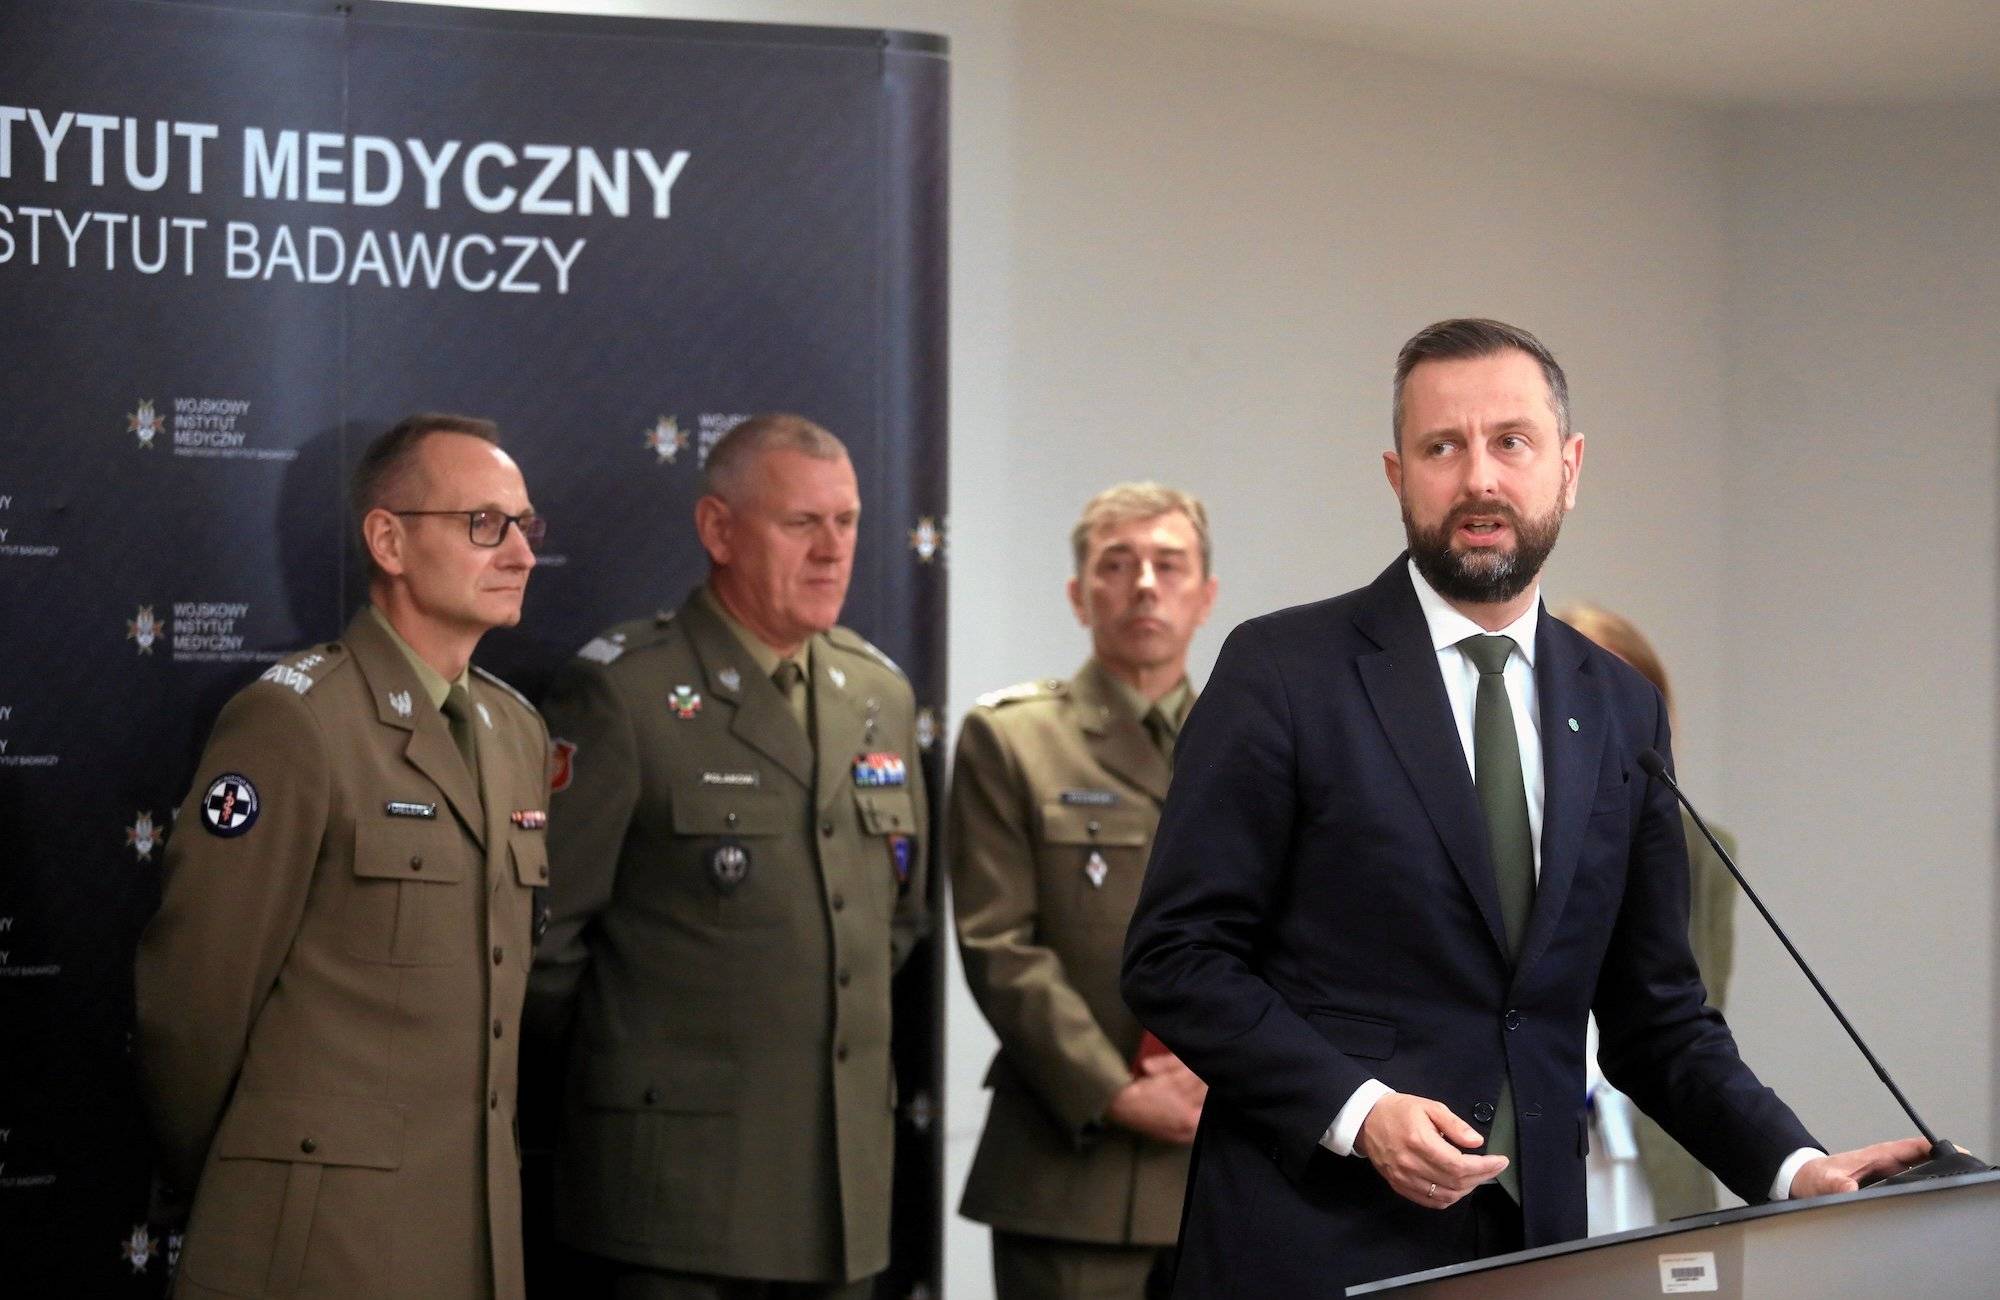 Kosiniak-Kamysz podczas konferencji w Wojskowym Instytucie Medycznym. Przemawia zza podium, z tyłu za nim troje wojskowych w mundurach.